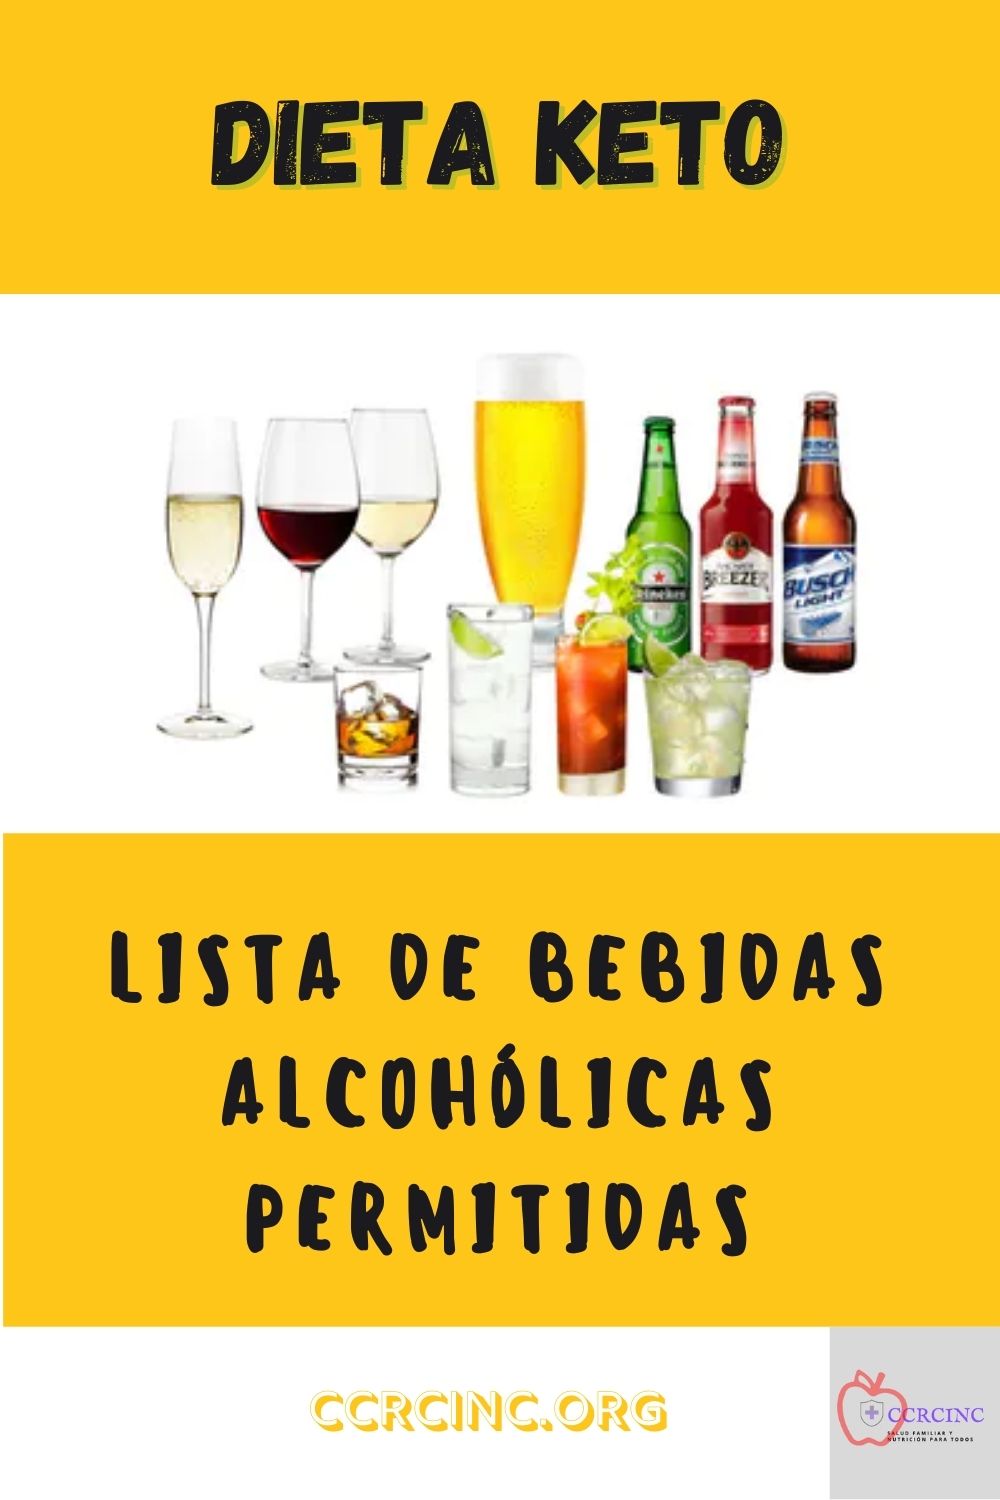 LISTA DE BEBIDAS ALCOHÓLICAS PERMITIDAS EN LA DIETA CETOGÉNCIA